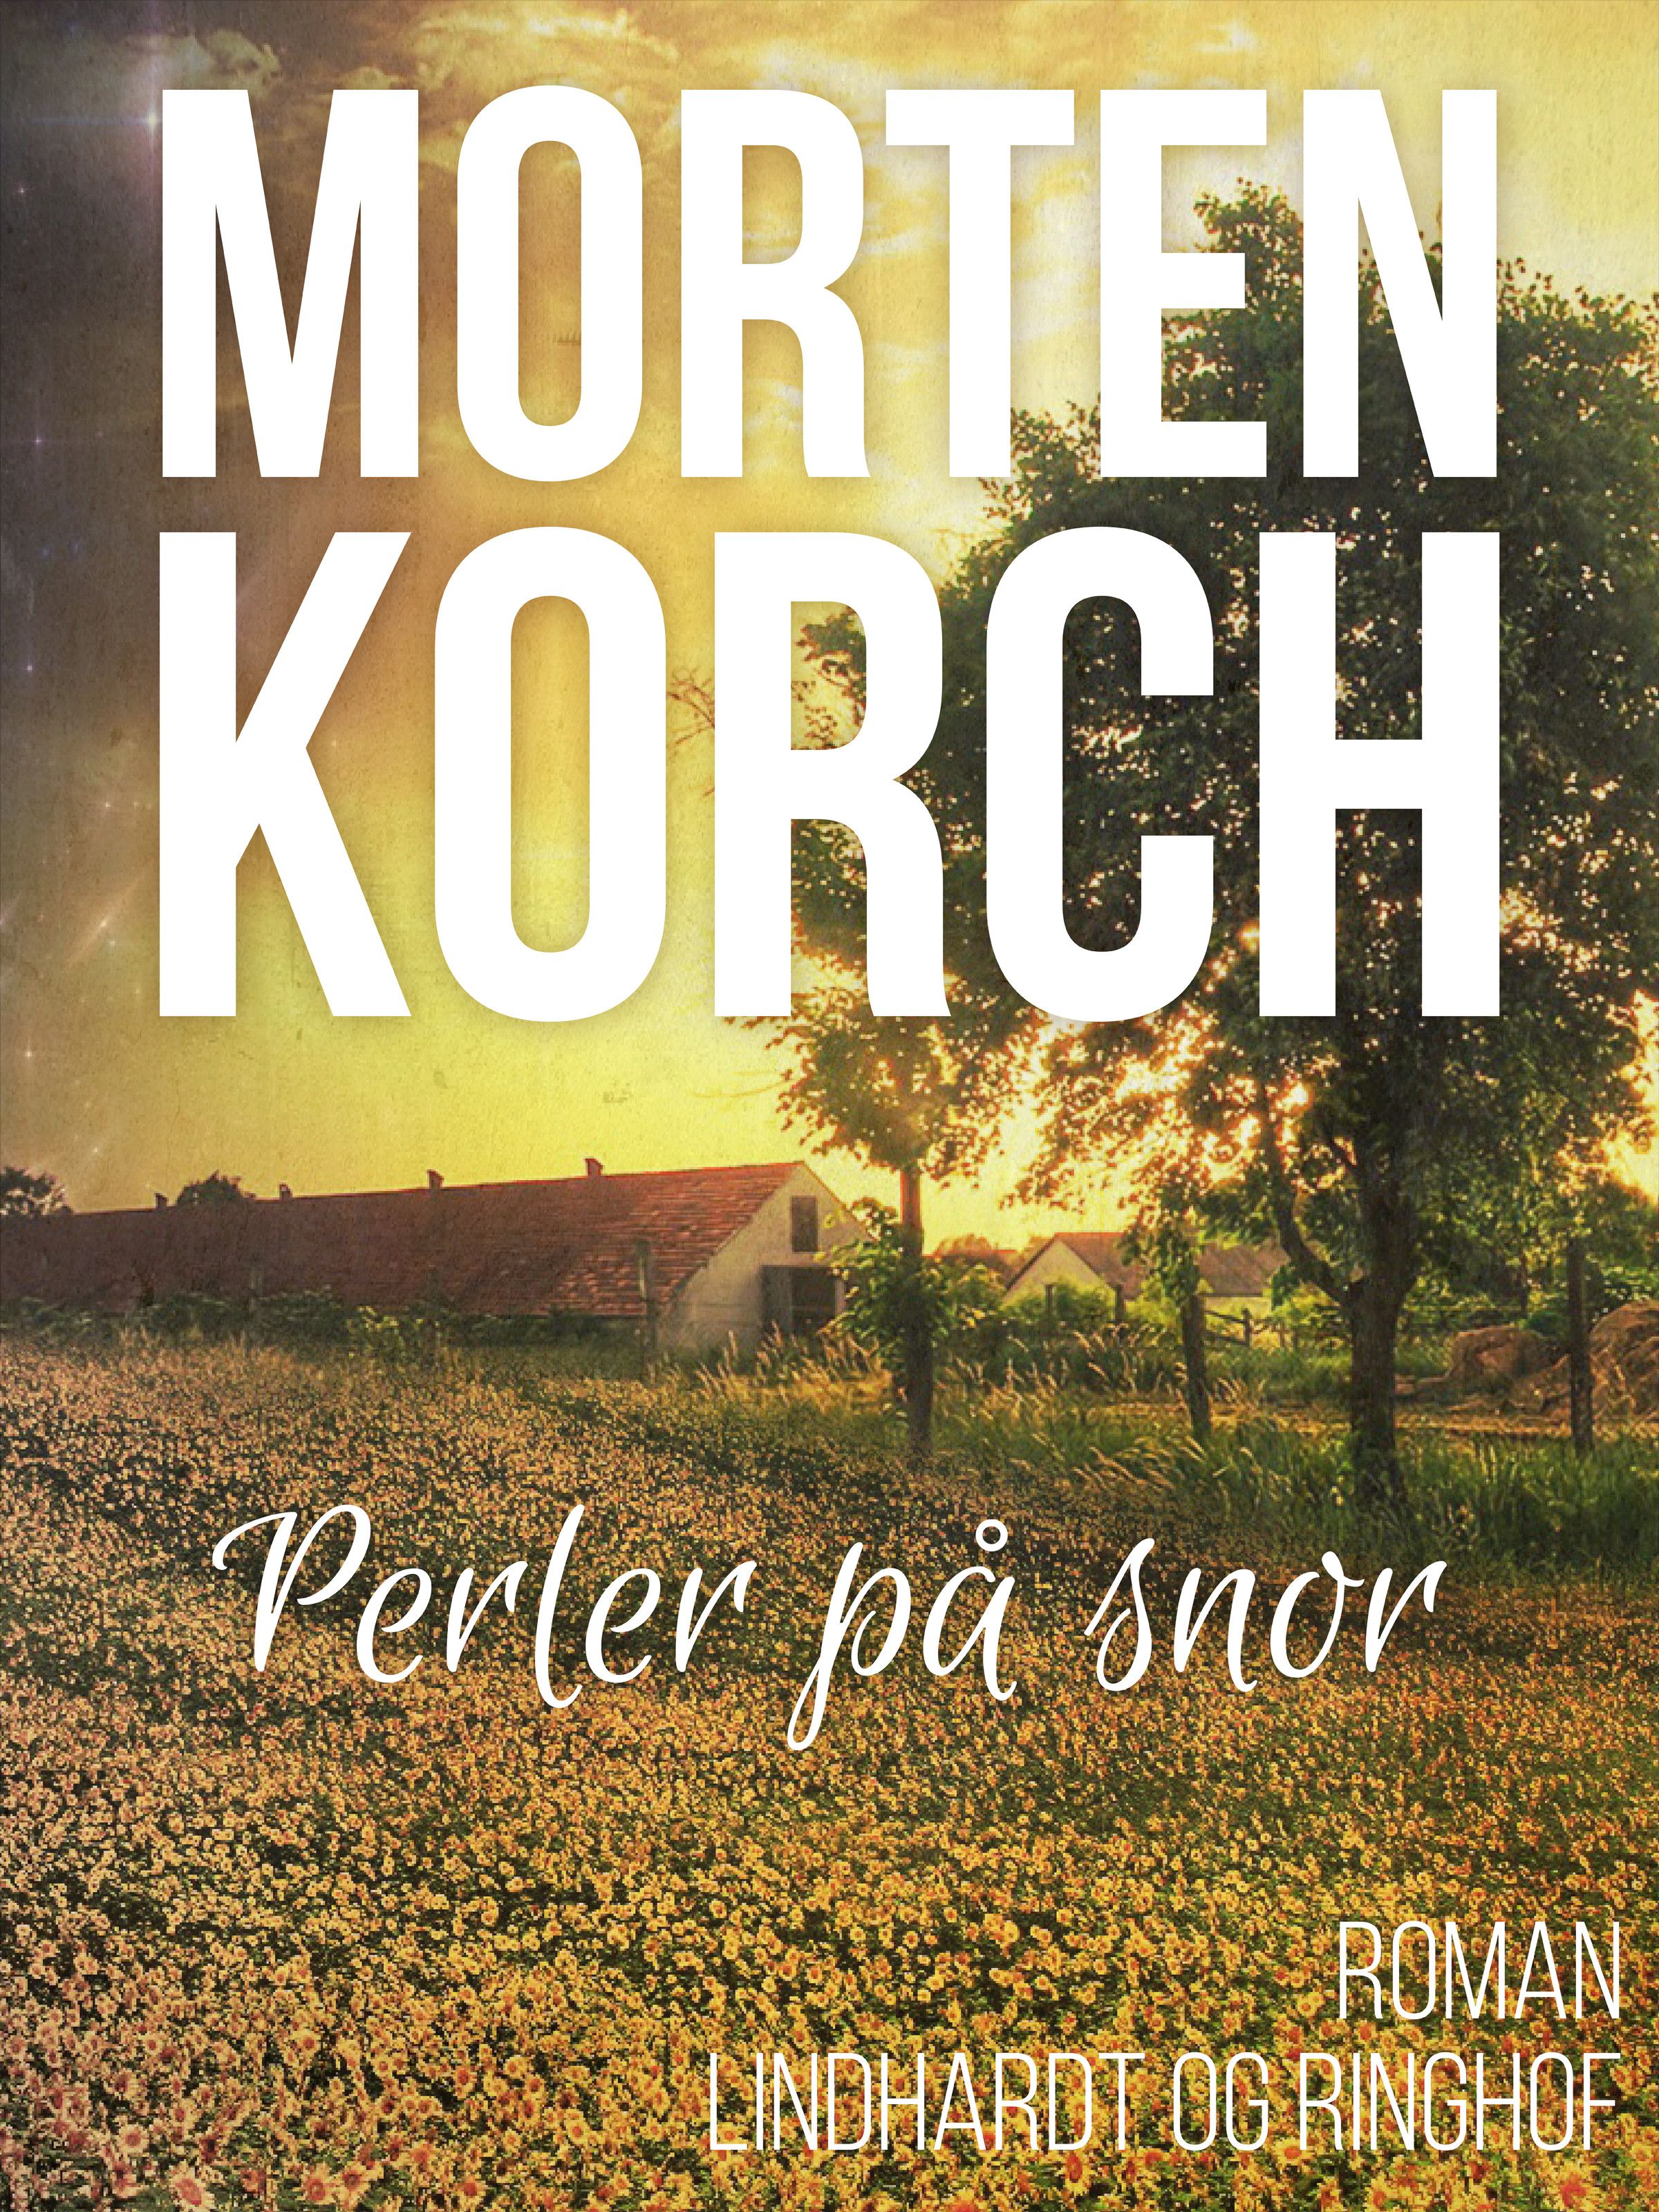 Perler på snor, ljudbok av Morten Korch